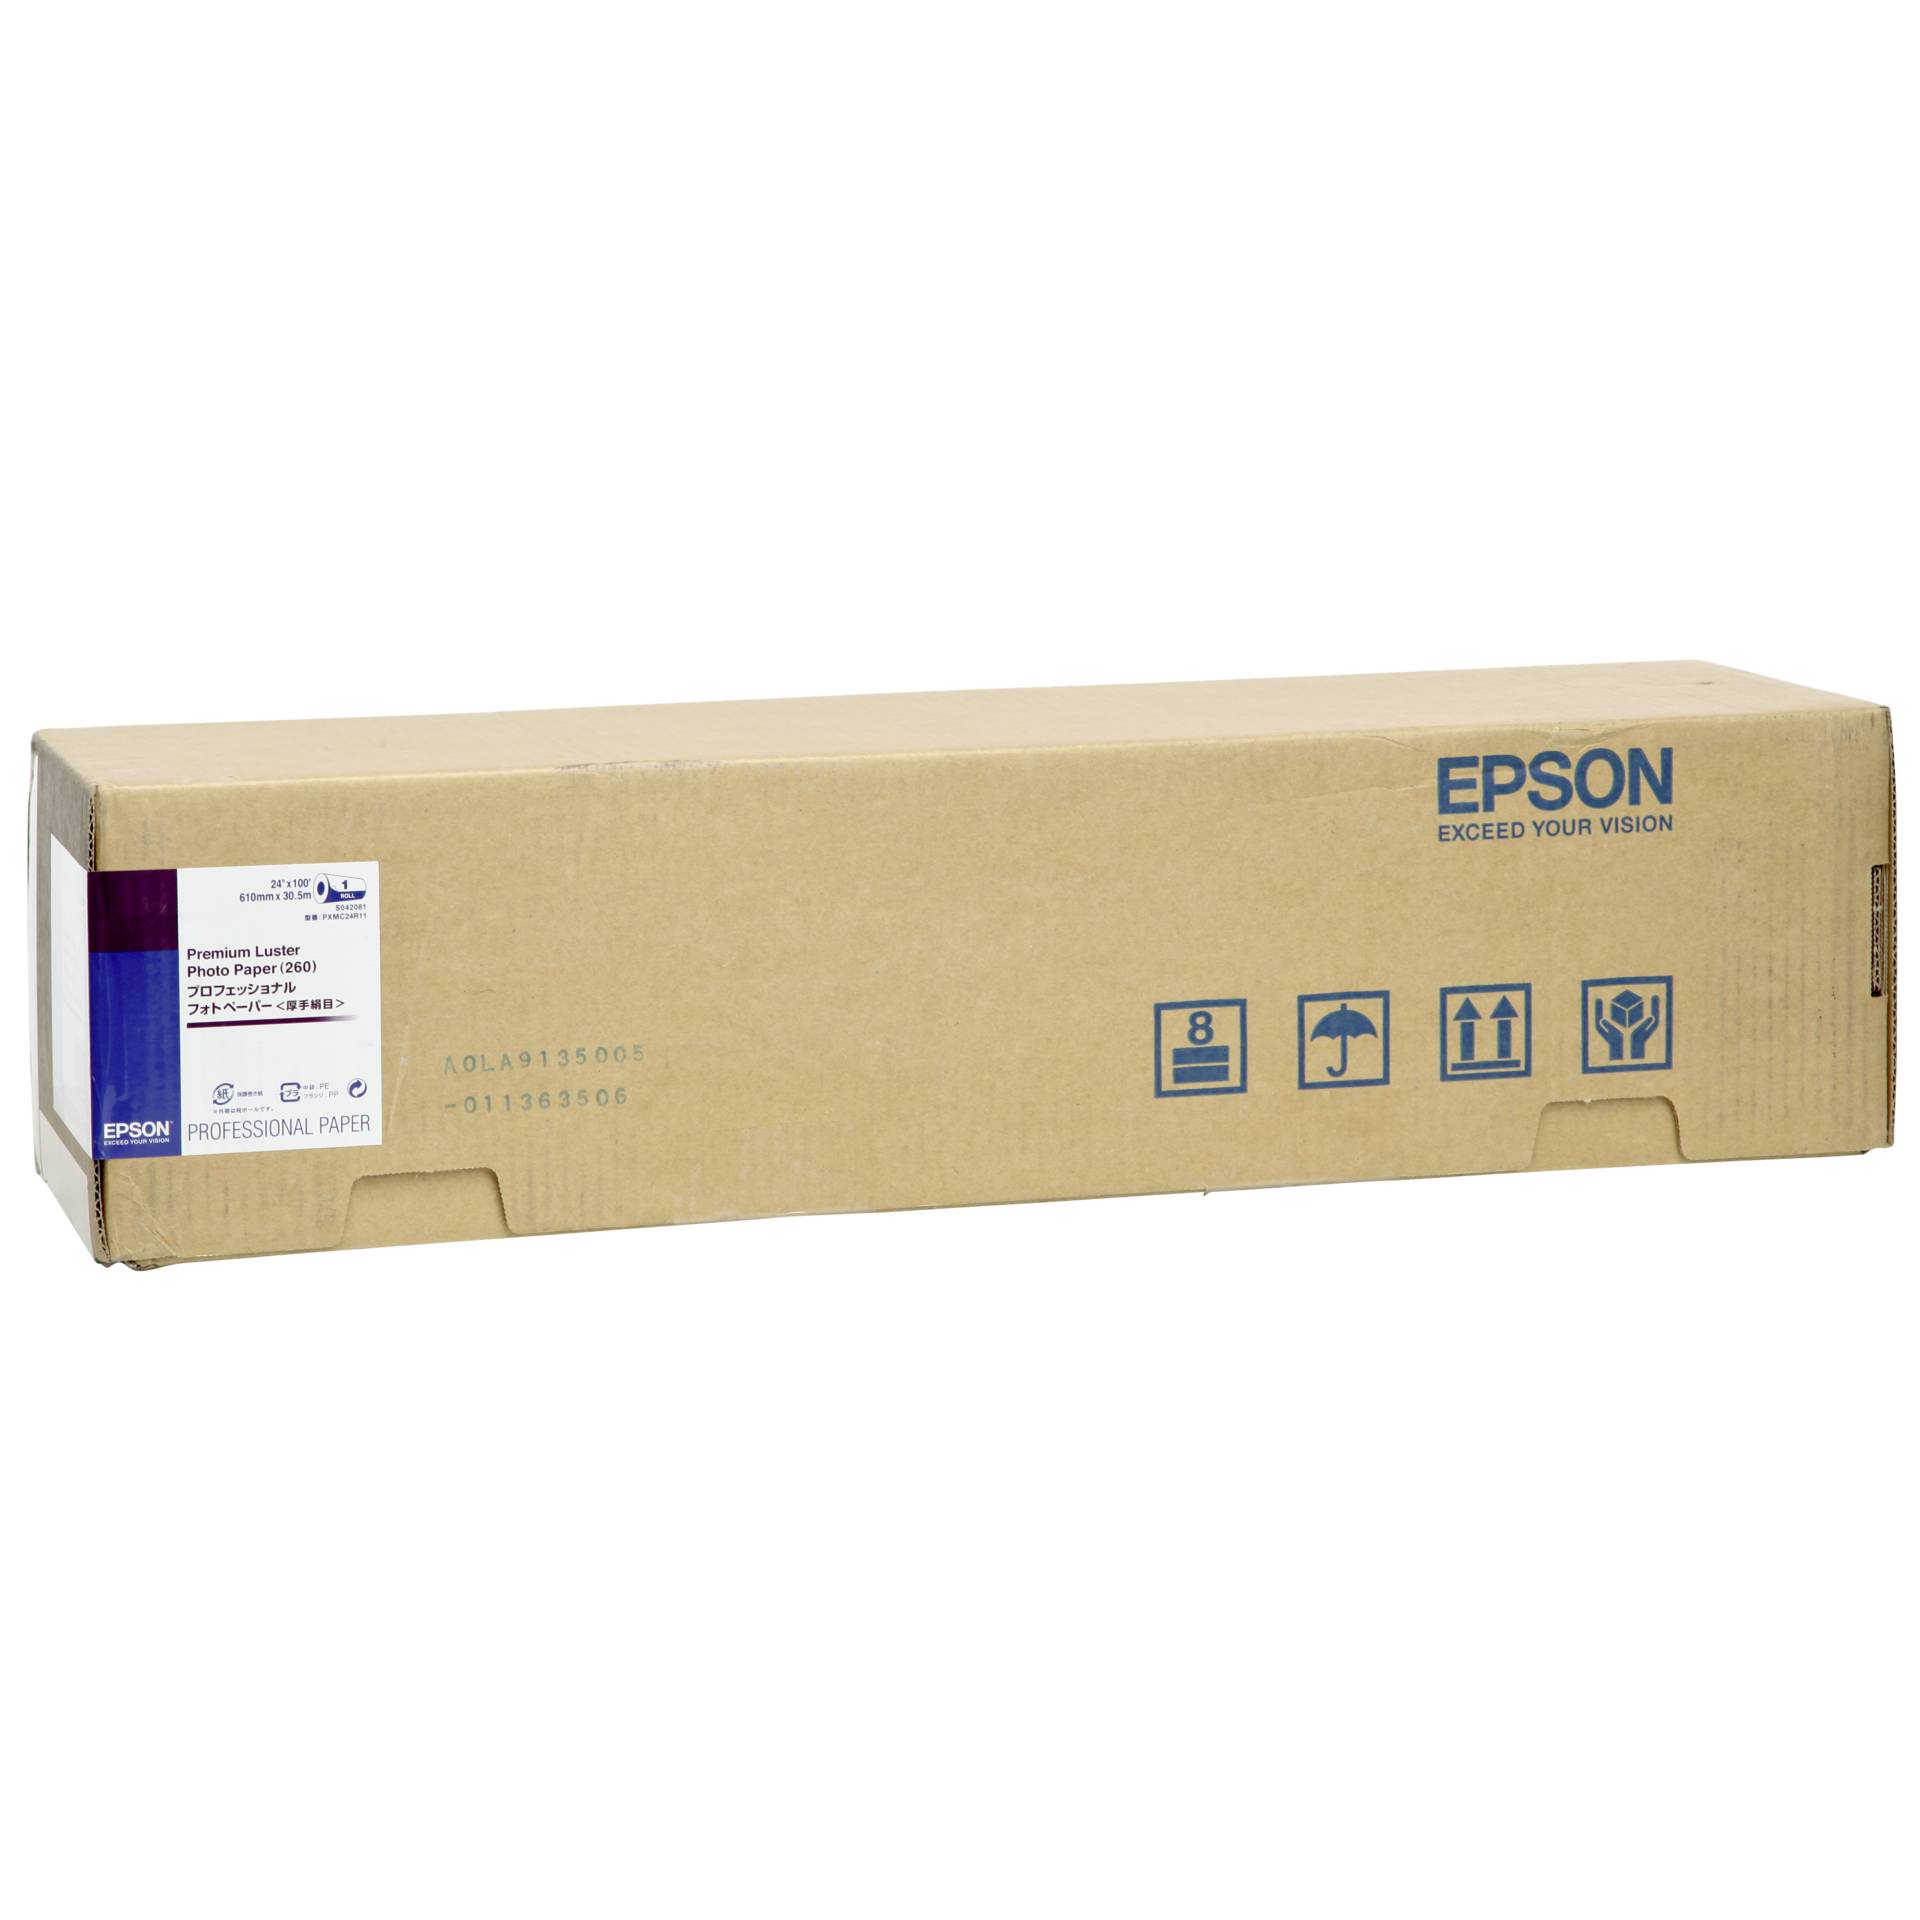 Epson Premium Luster Photo Paper 61 cm x 30,5 m, 260 g   S 0